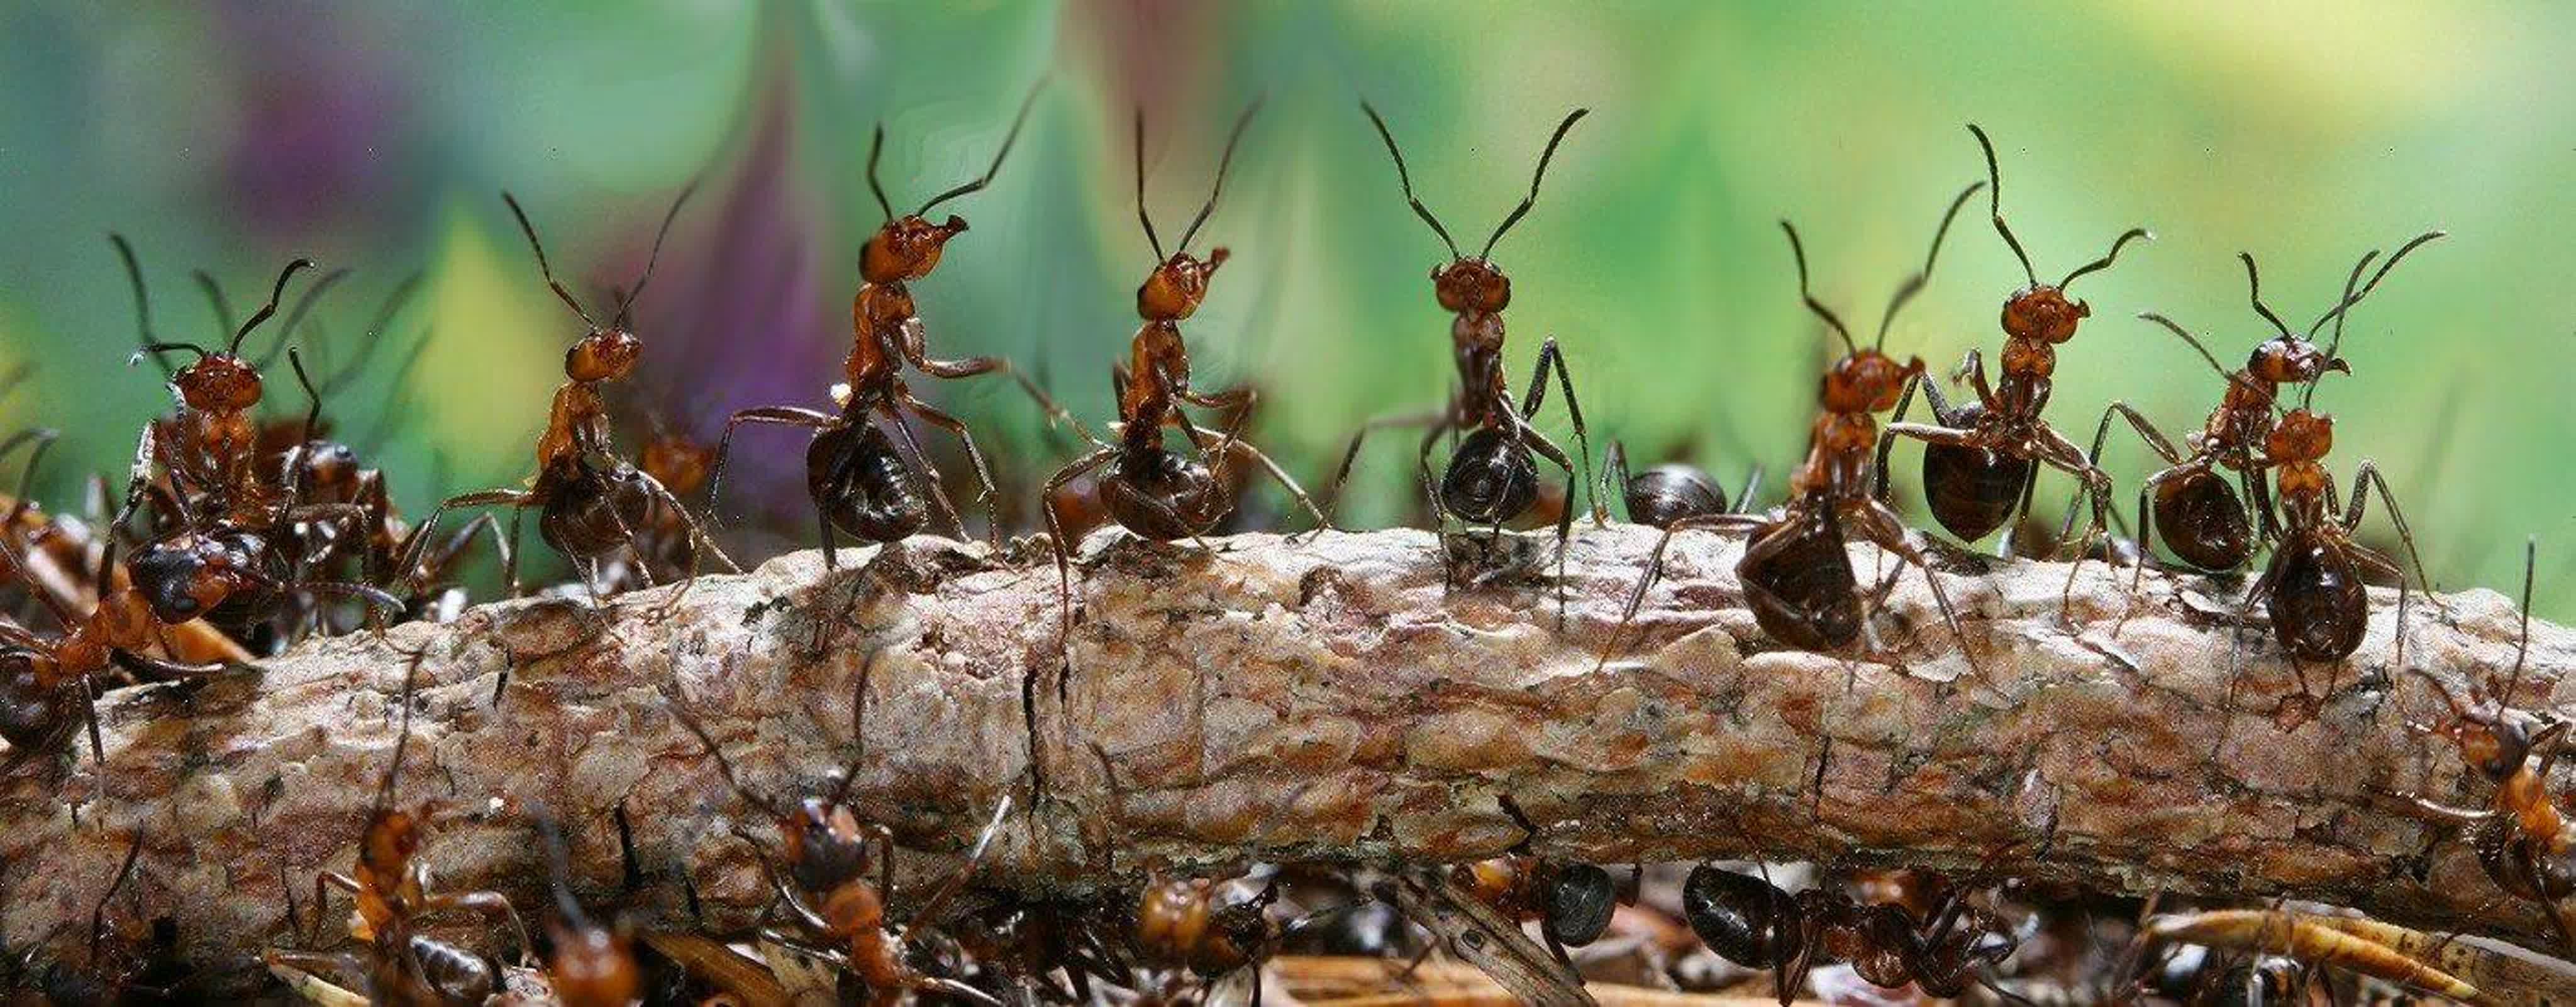 Несмотря на муравьиную склонность. Лесные муравьи Муравейник. Муравьи колония Муравейник. Рыжий Лесной муравей Муравейник. Колония муравьев.